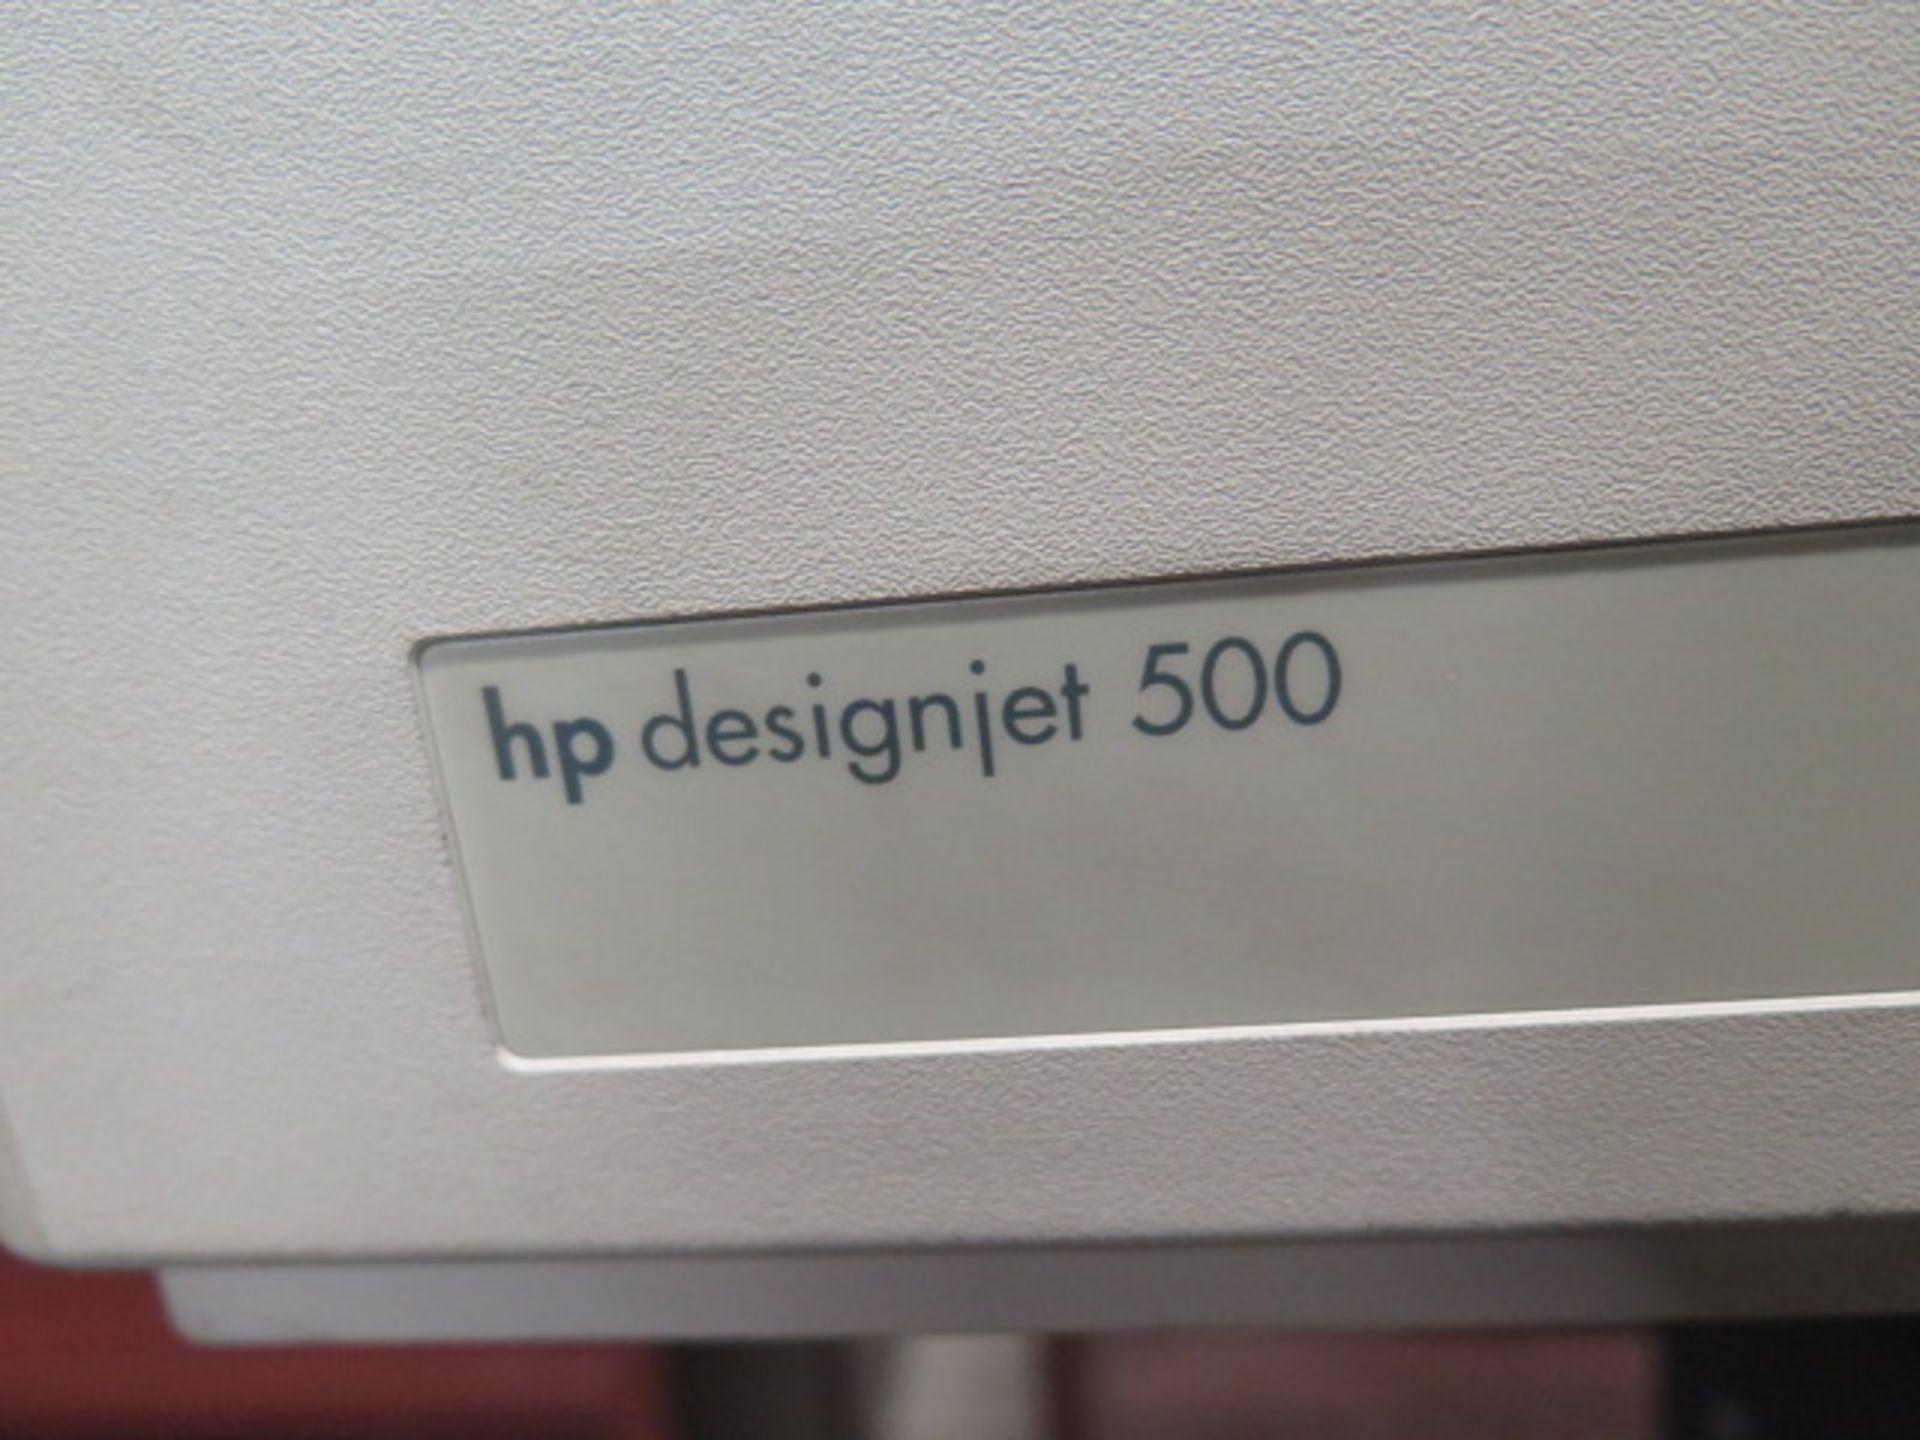 Hewlett Packard DesighJet 500 Wide Format 42" Color Plotter (SOLD AS-IS - NO WARRANTY) - Image 6 of 6